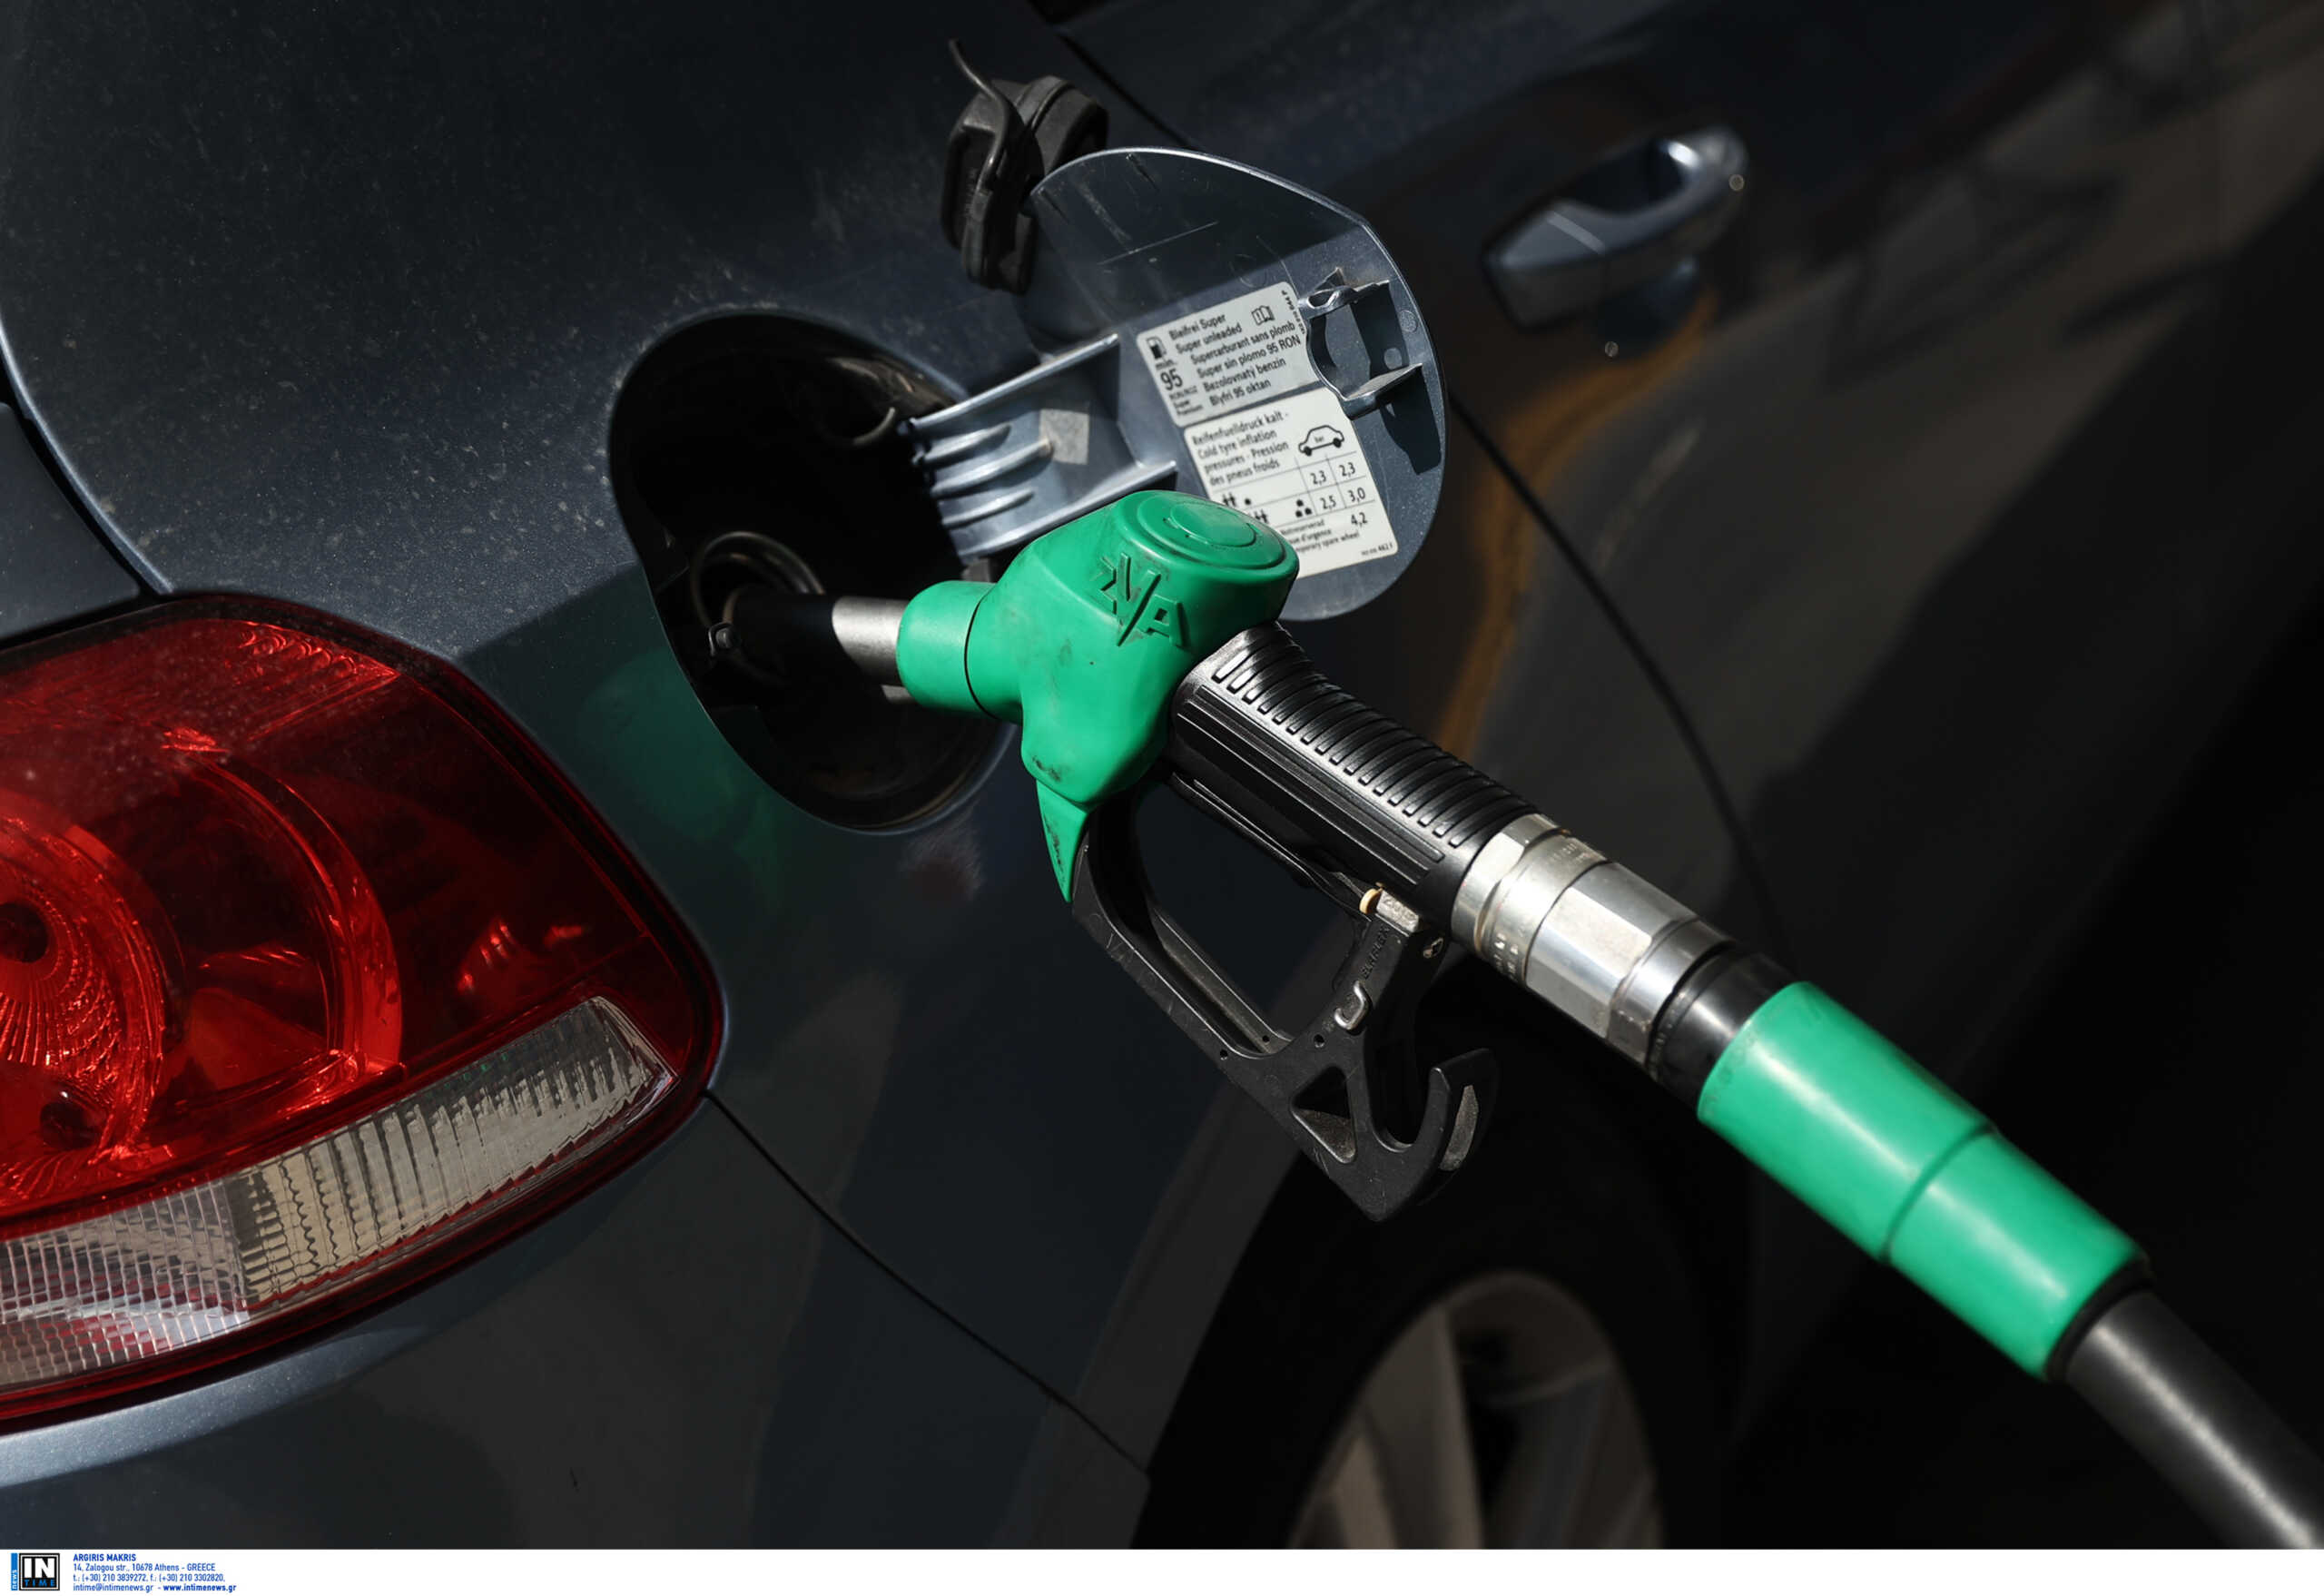 Πετρέλαιο: Πέφτουν οι τιμές, έρχονται σημαντικές μειώσεις στην αντλία – Κάτω από 2 ευρώ η βενζίνη